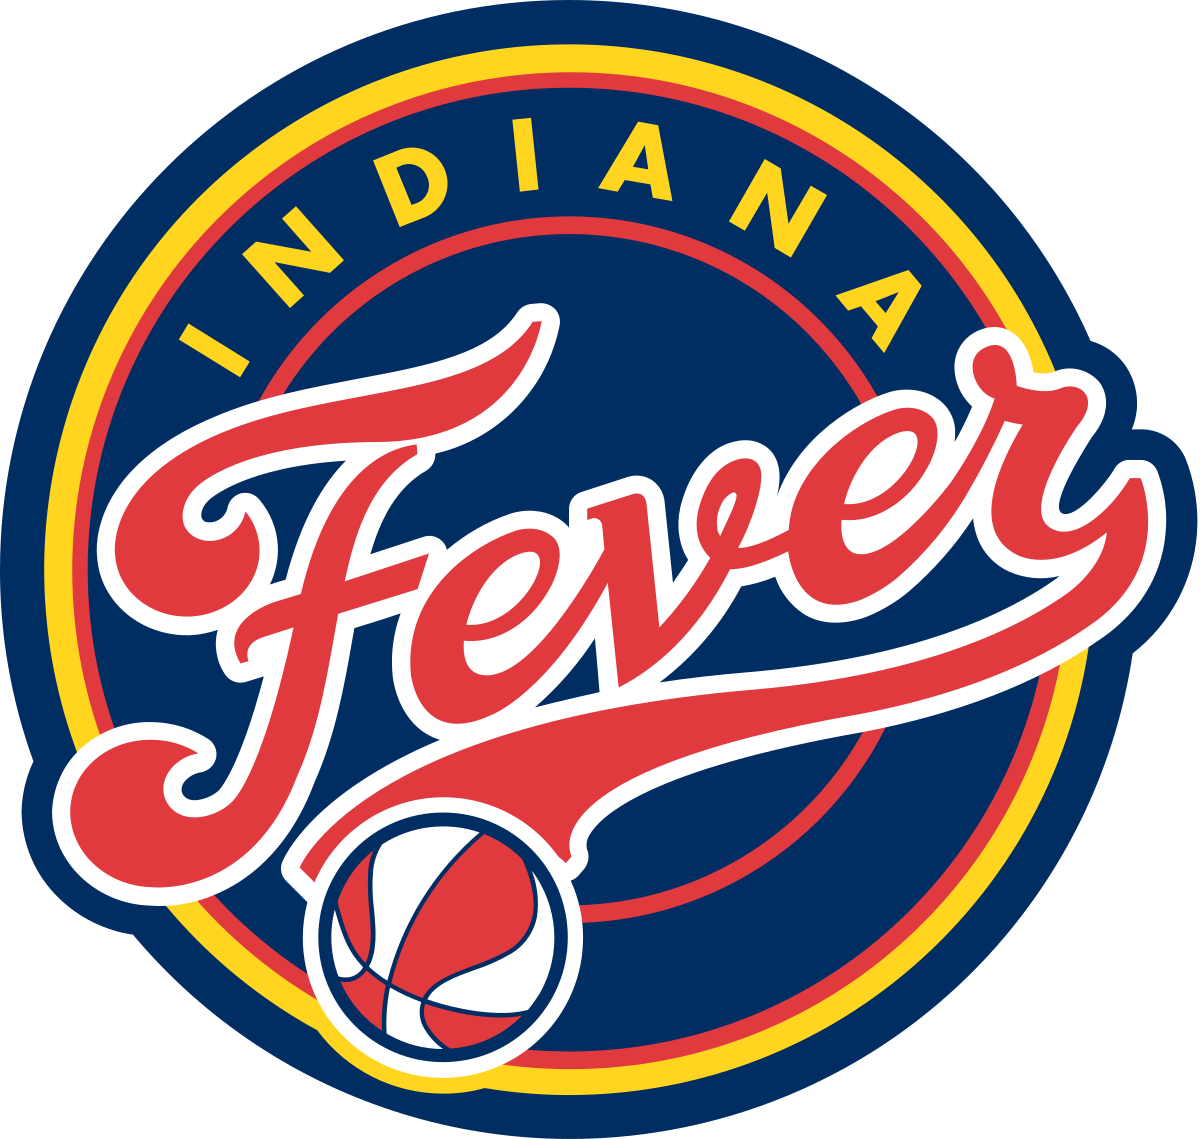 Indiana Fever - WNBA